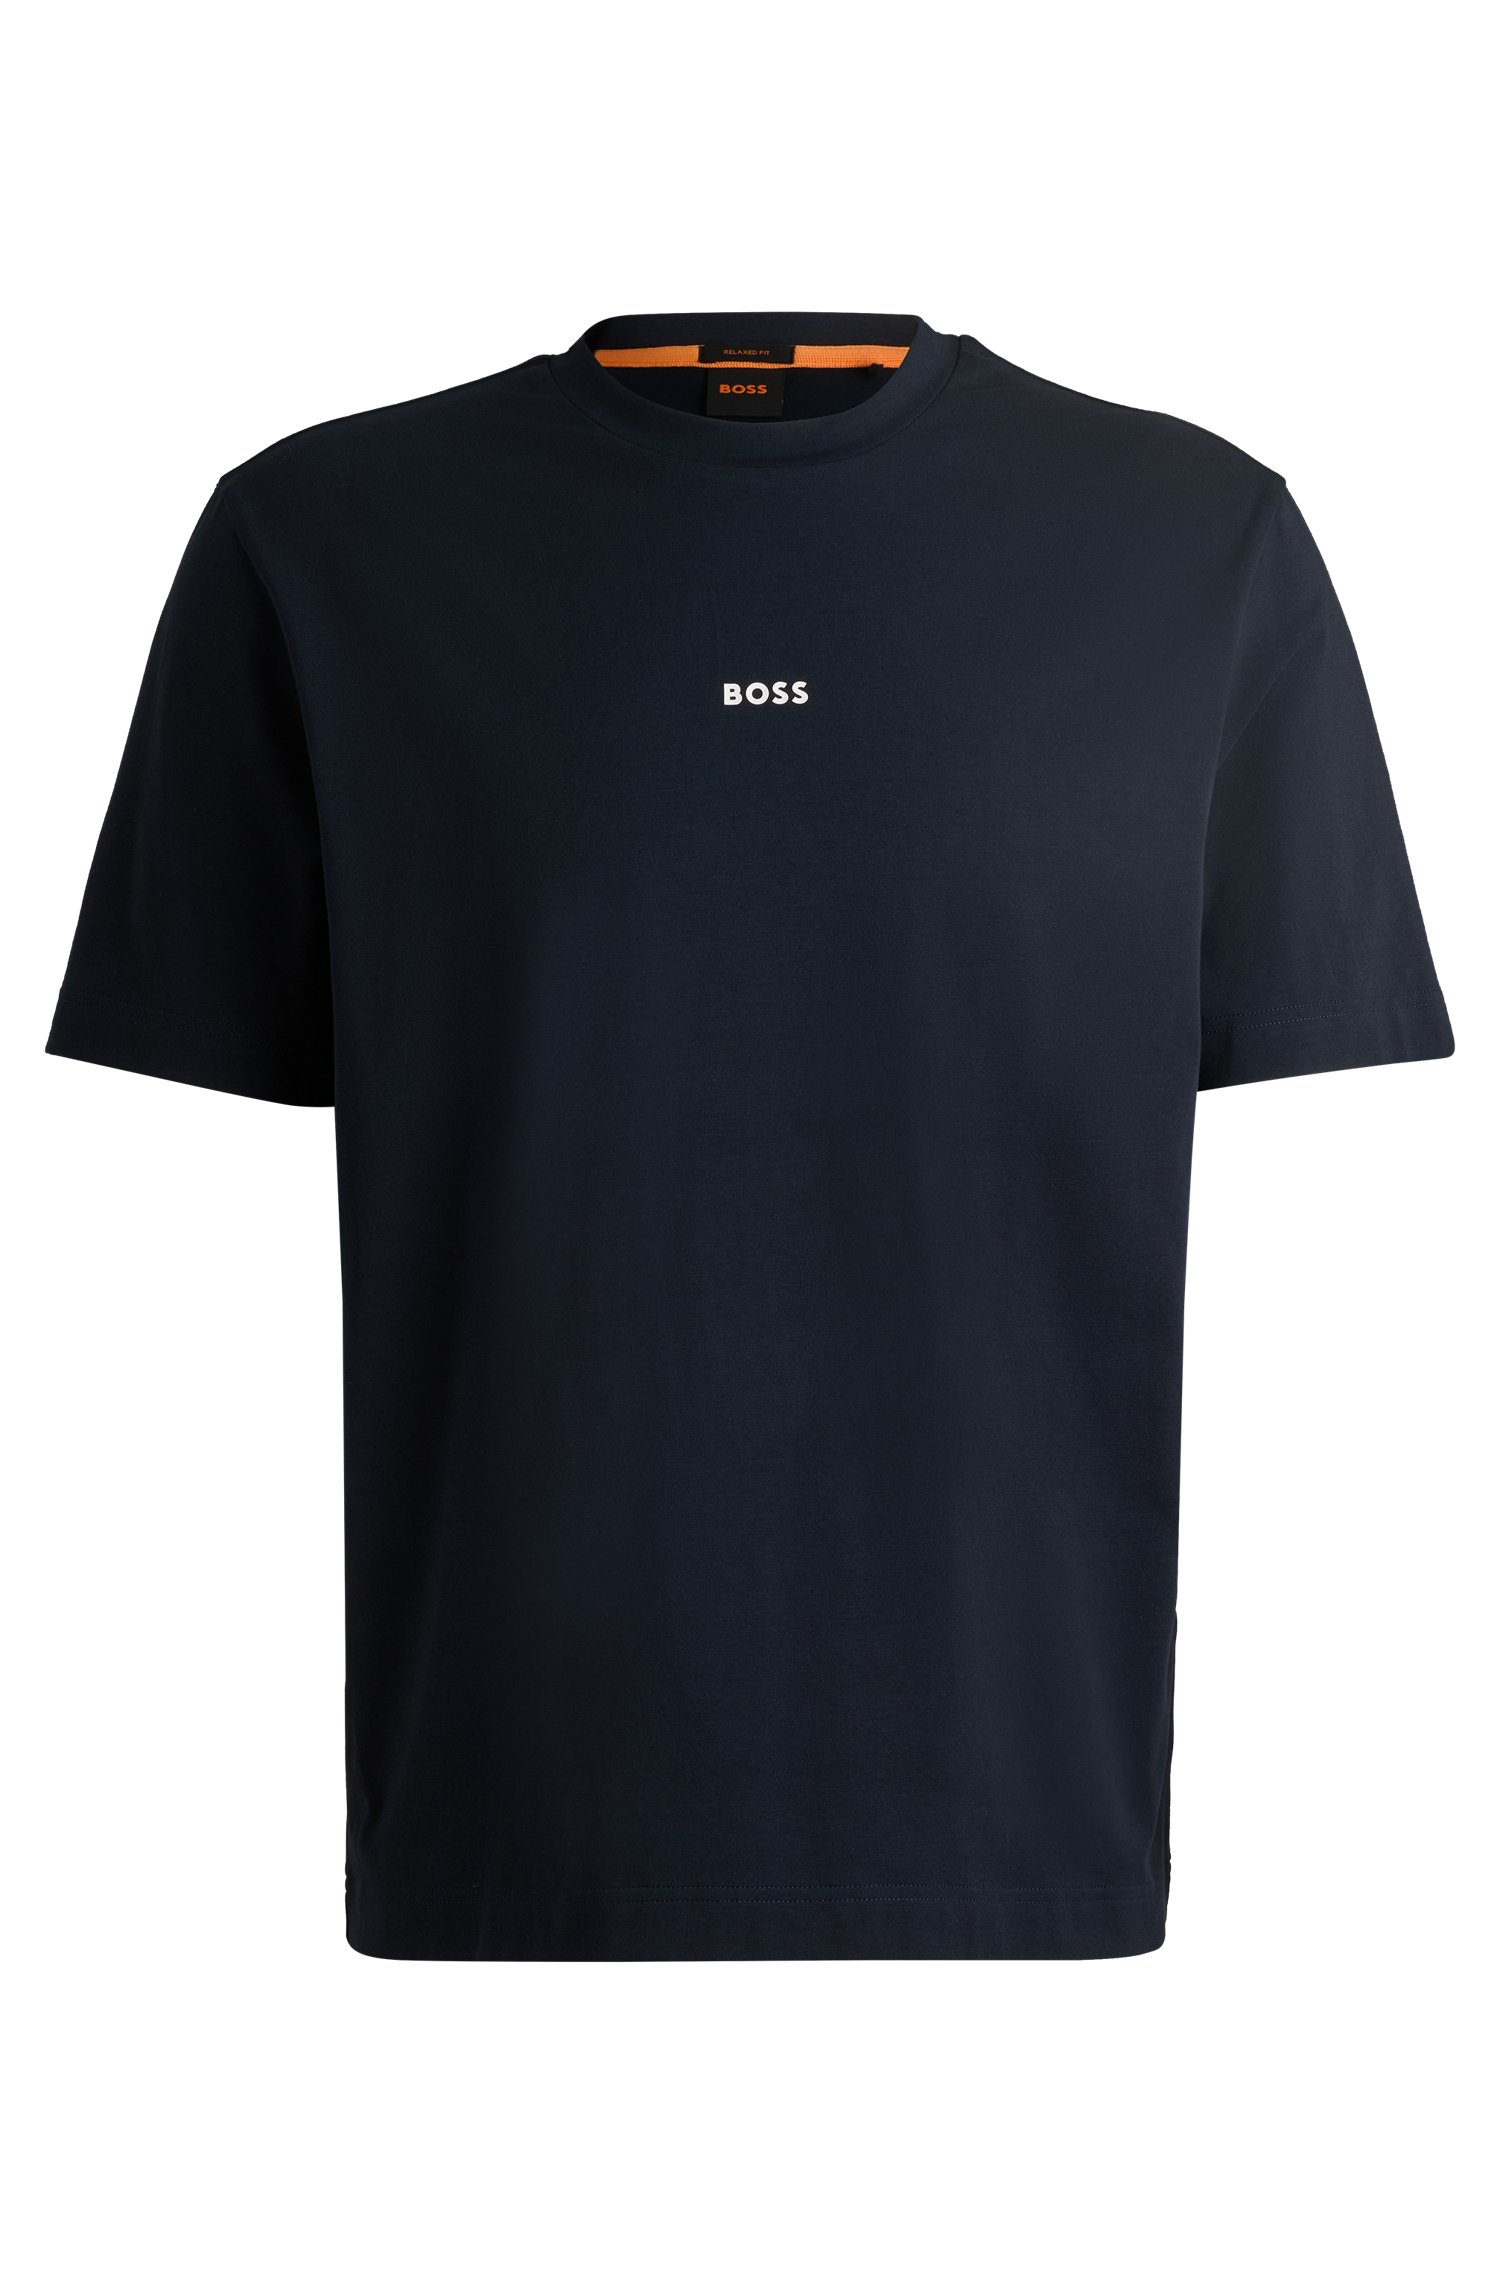 Camiseta relaxed fit de algodón elástico con logo estampado